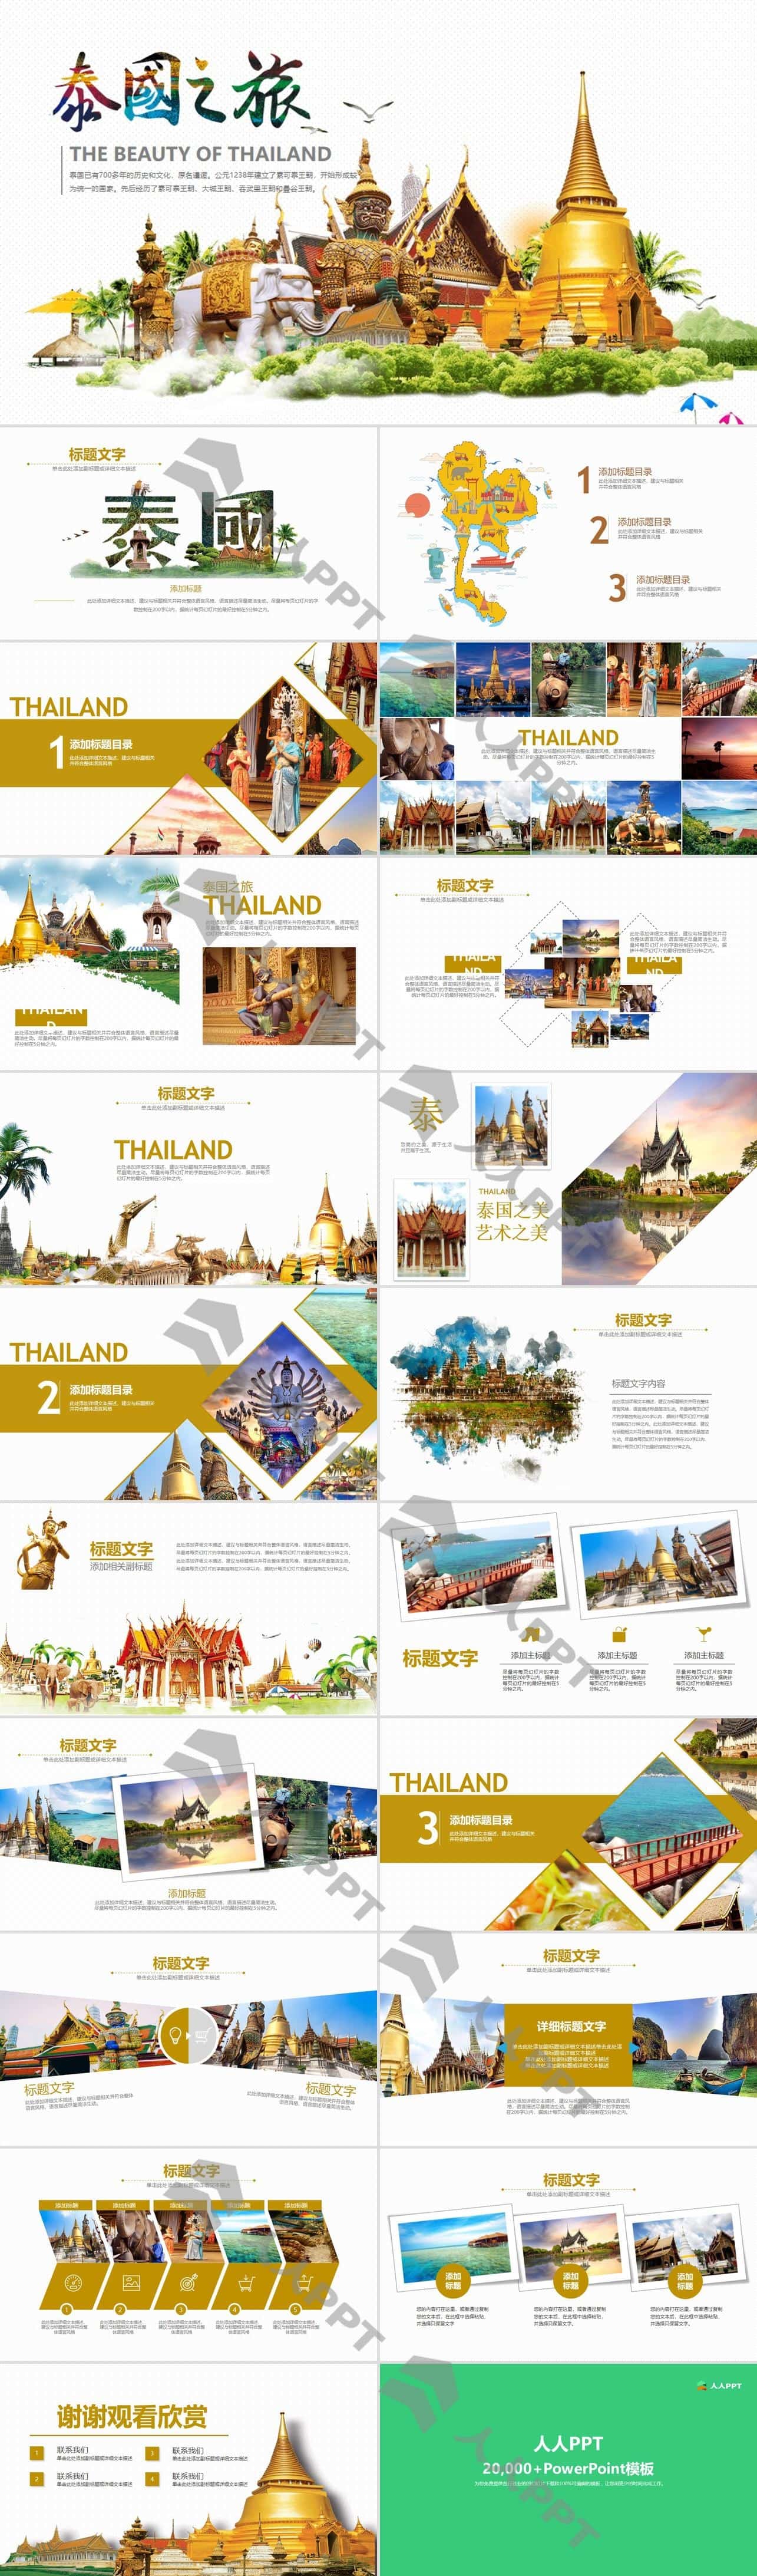 泰国旅游旅行介绍PPT模板长图